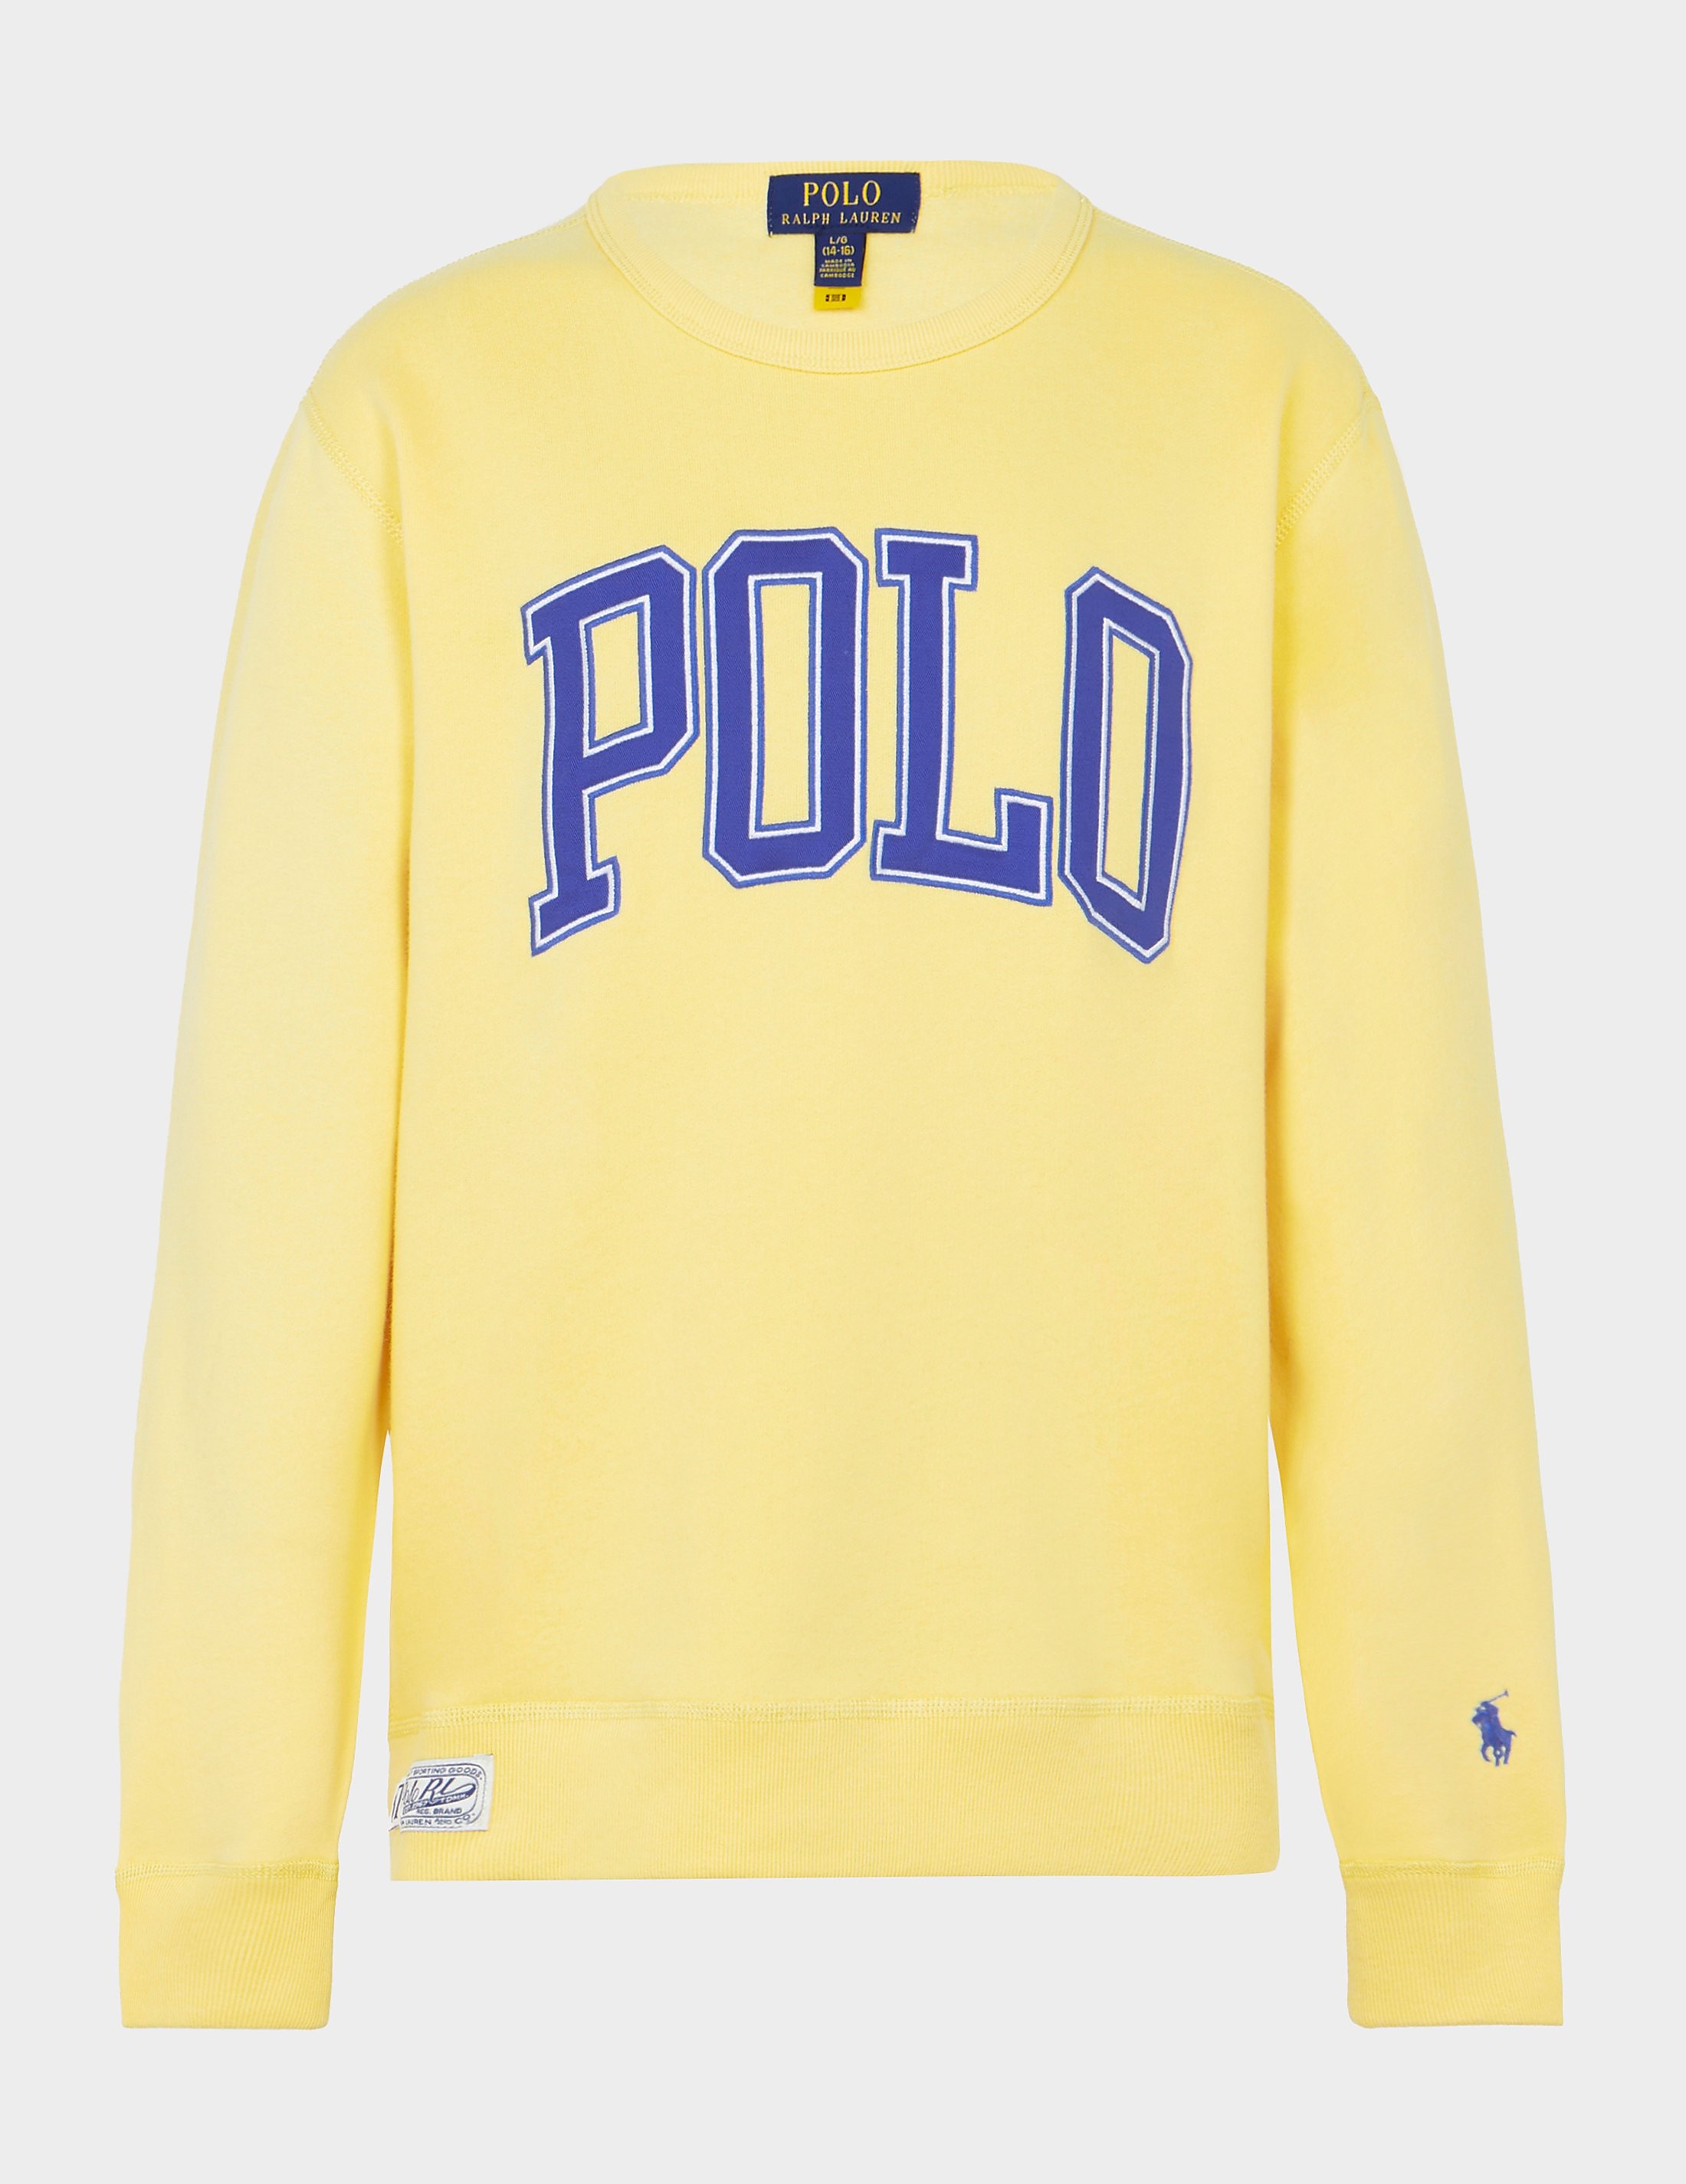 Polo Ralph Lauren Polo Sweatshirt Yellow, Yellow product